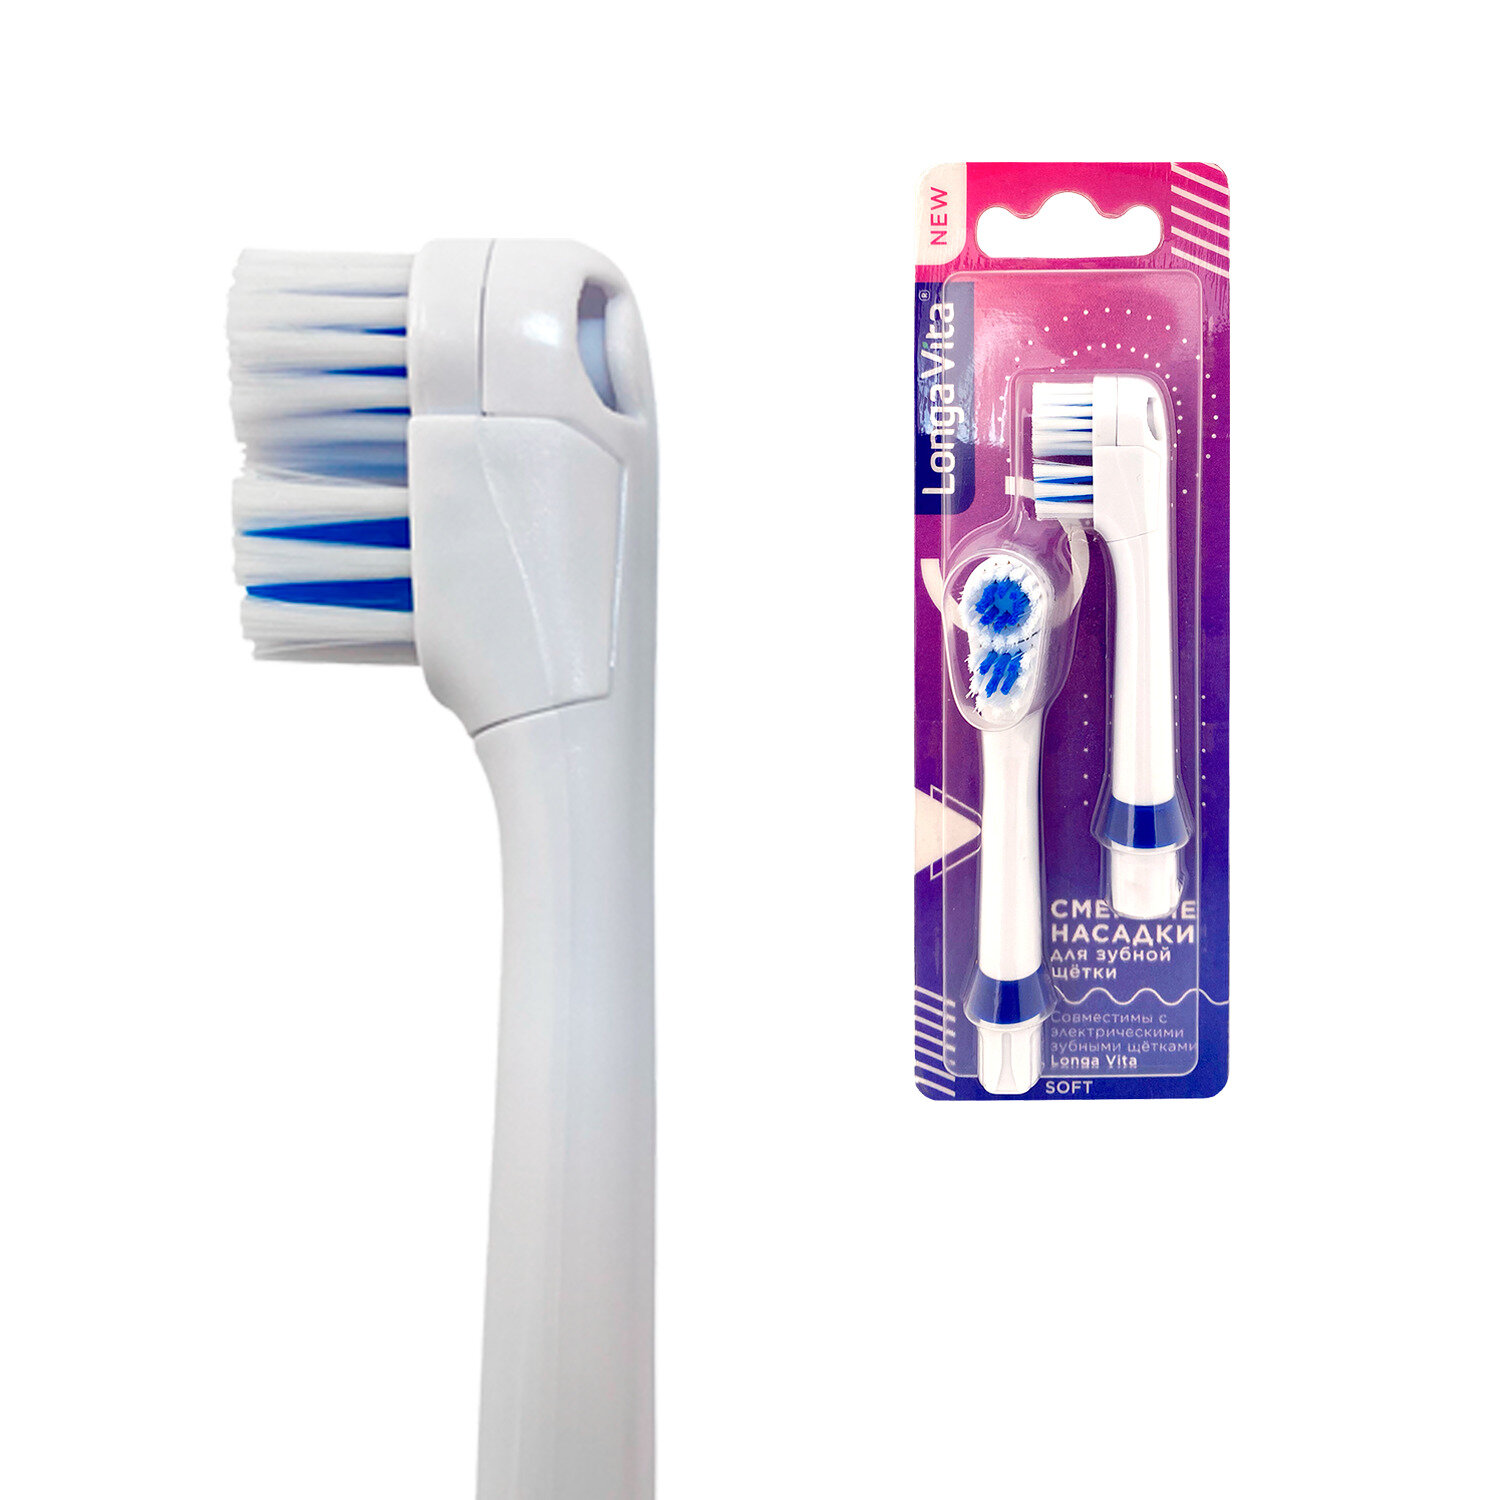 Насадки сменные для детской электрической зубной щётки Longa Vita, мягкая щетина, синяя